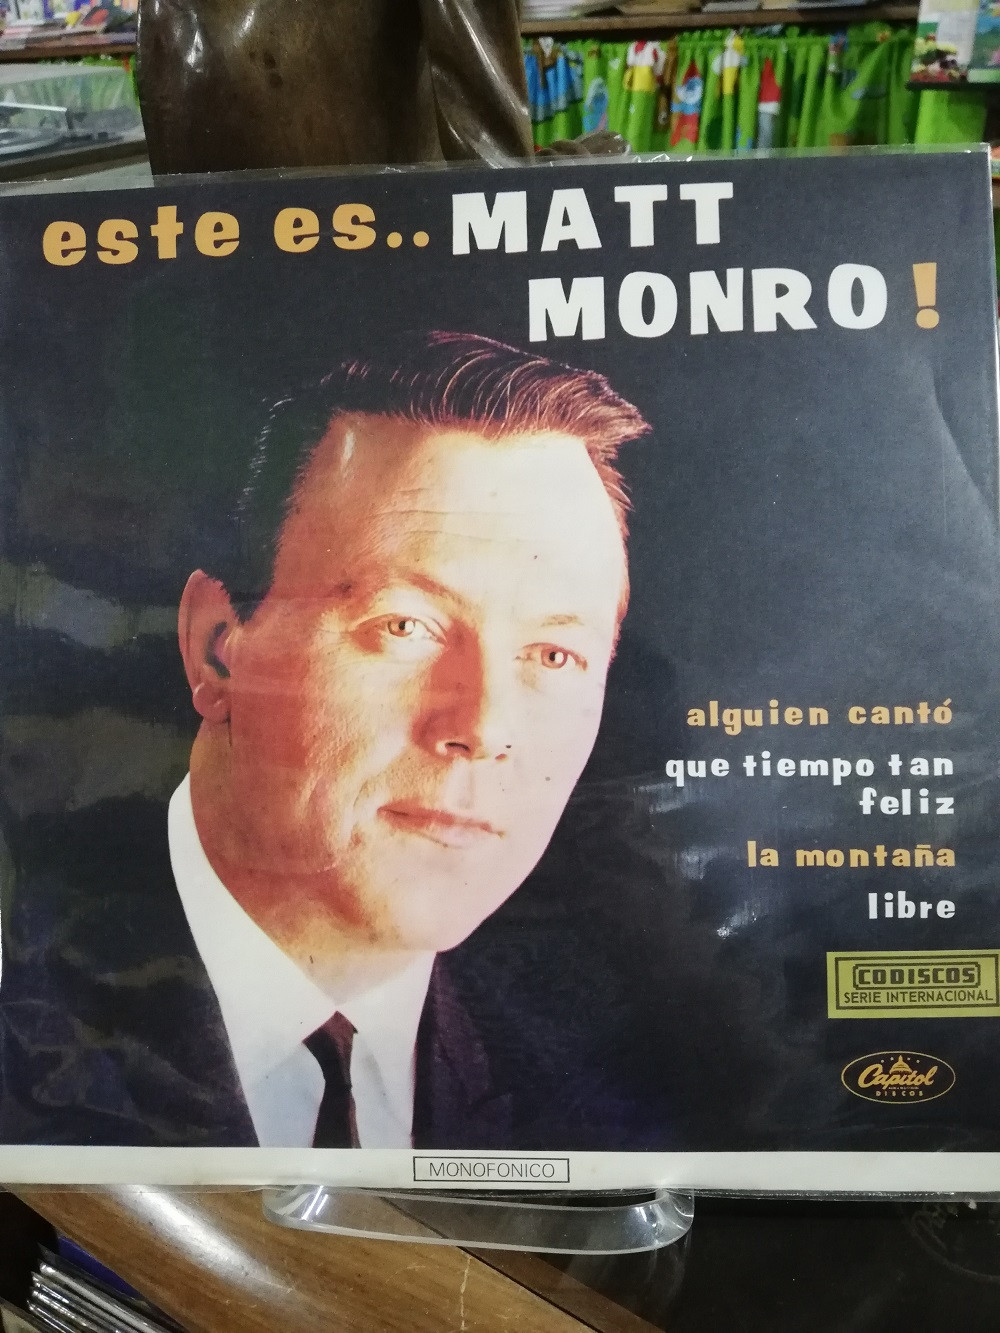 Imagen LP MATT MONRO - ESTE ES MATT MONRO! 1